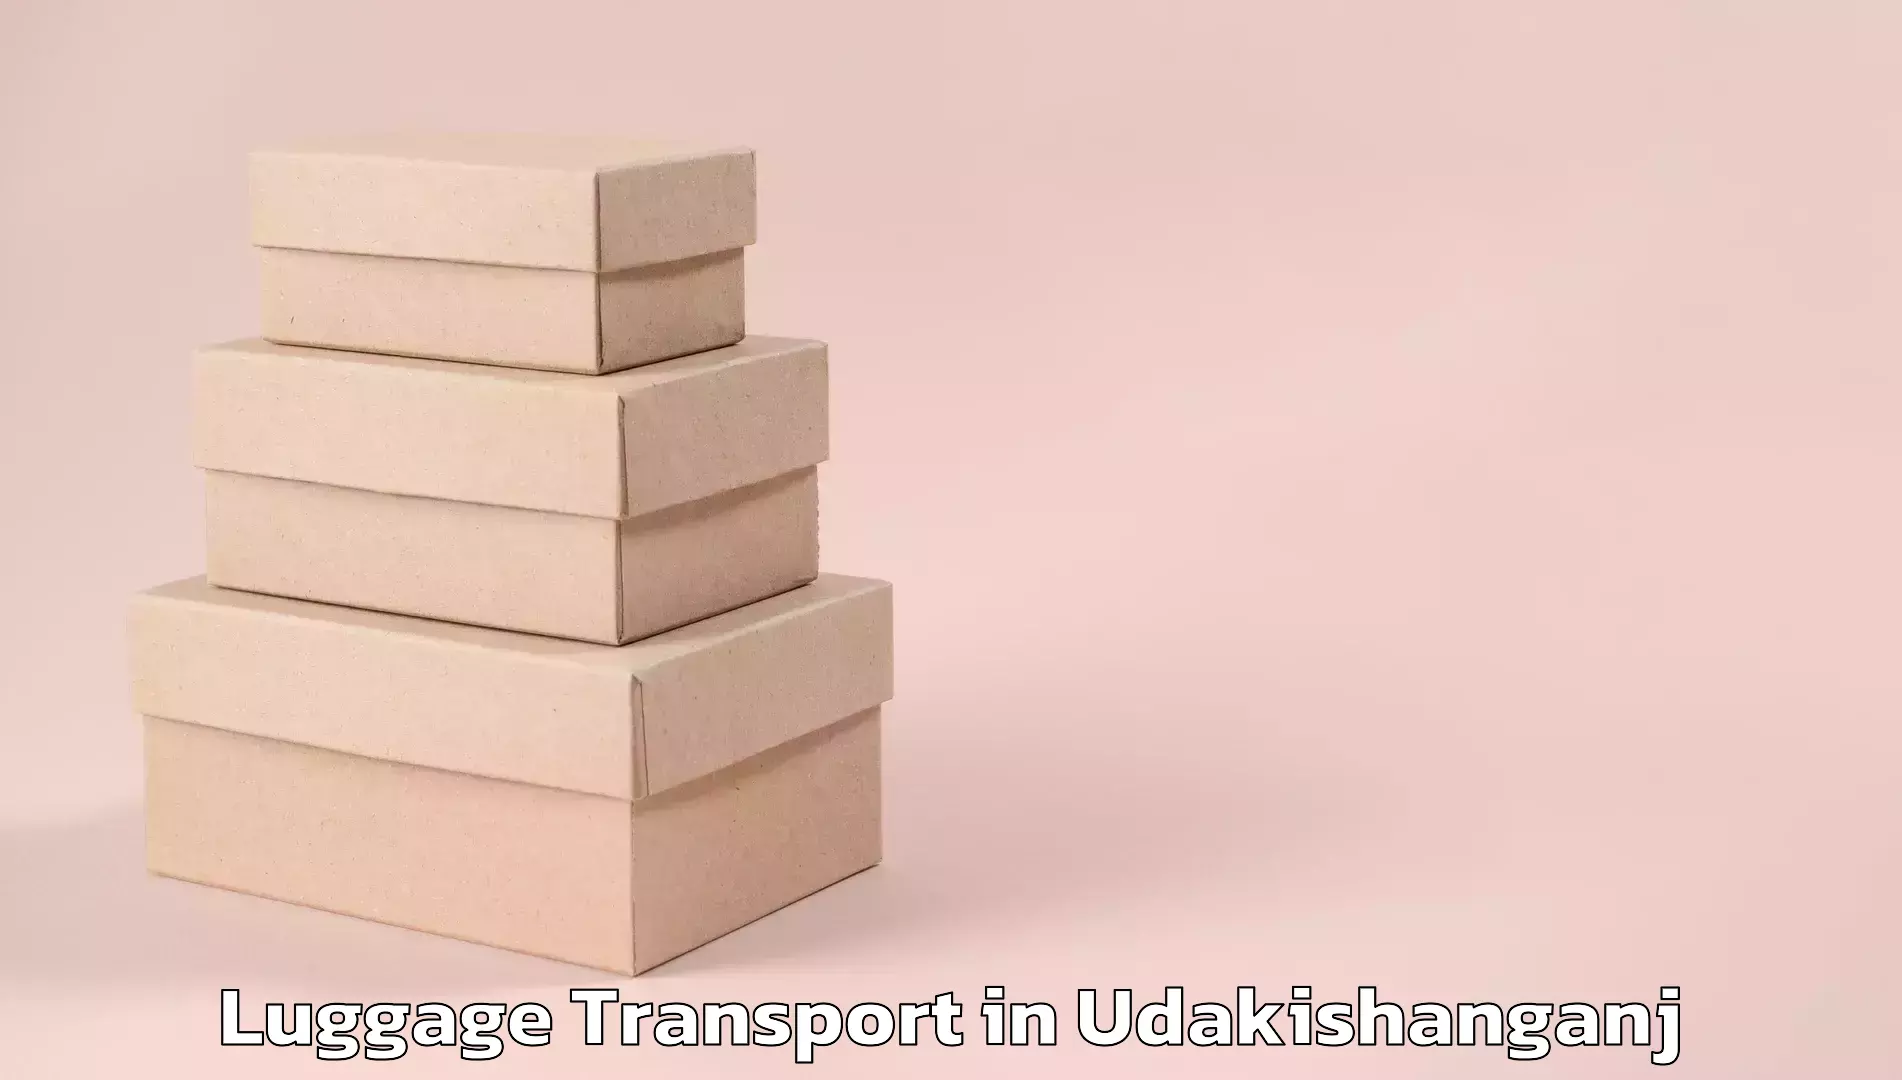 Luggage shipping specialists in Udakishanganj